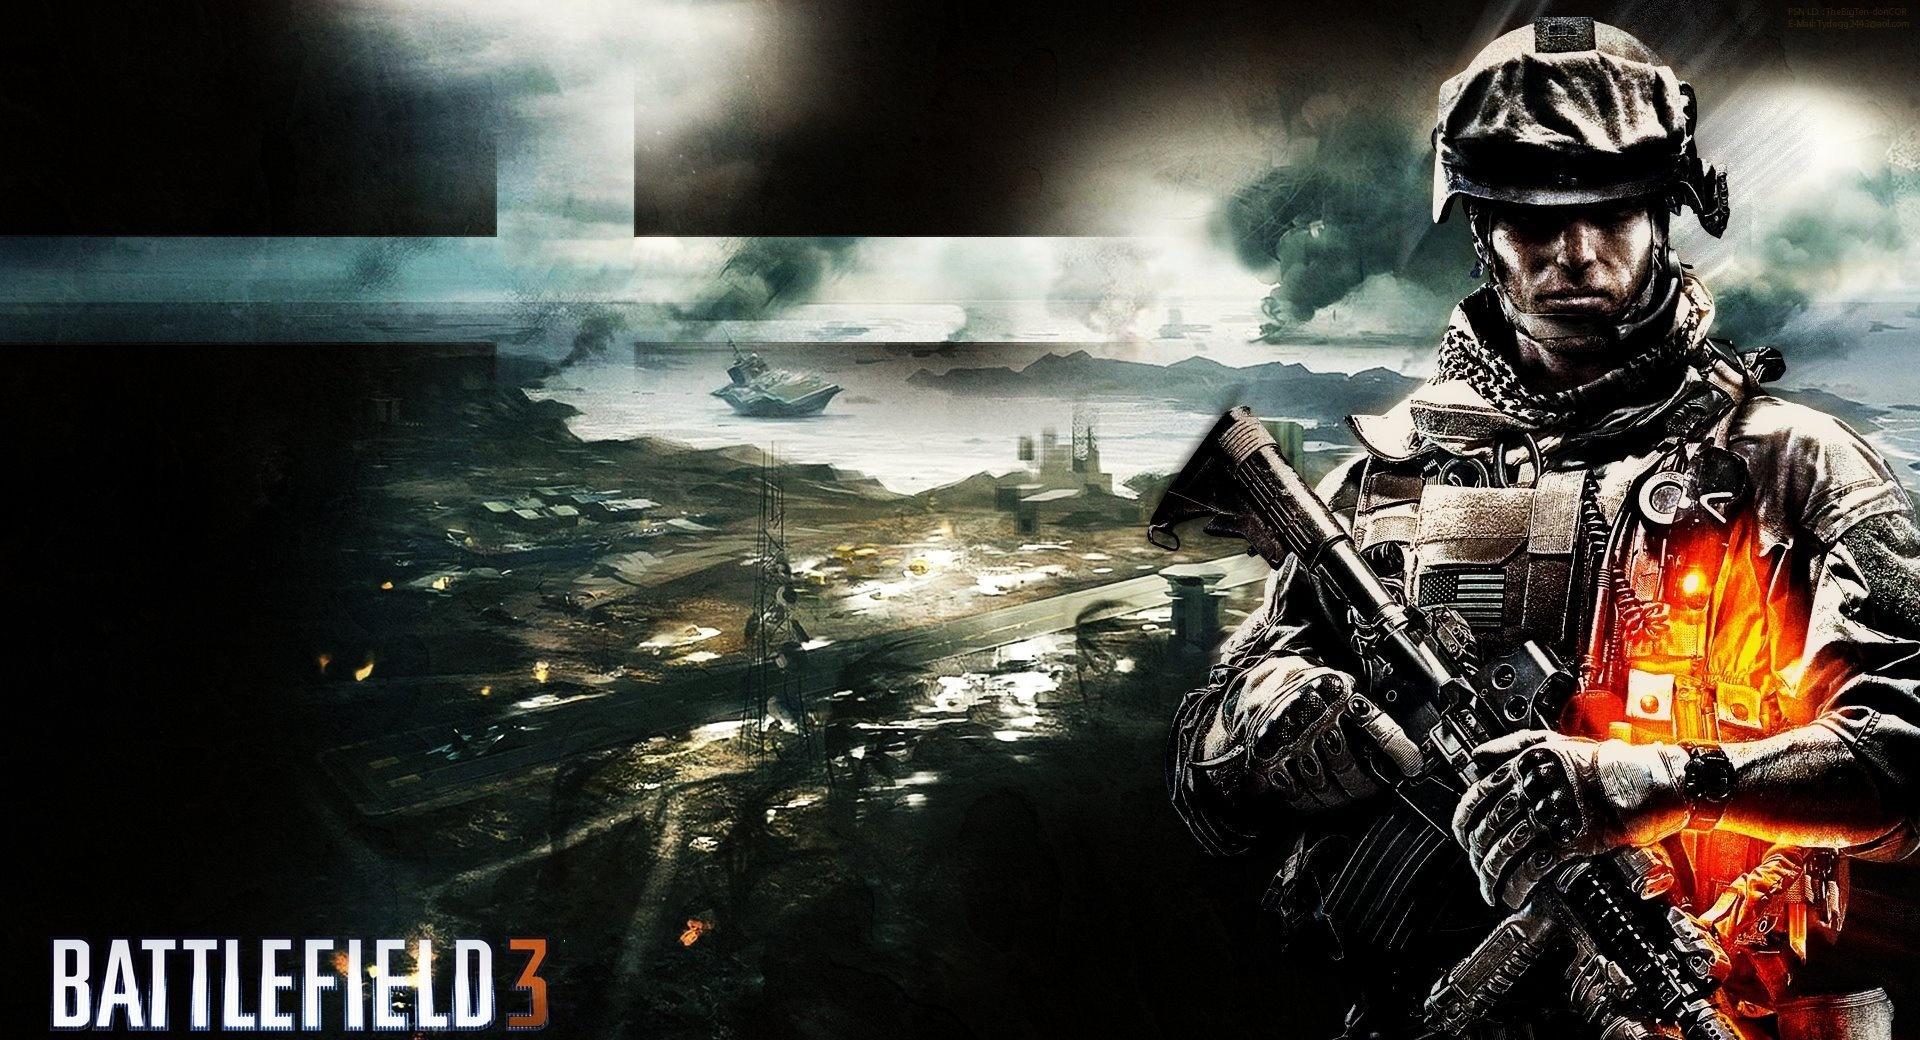 Battlefield 3 B2K at 1024 x 1024 iPad size wallpapers HD quality